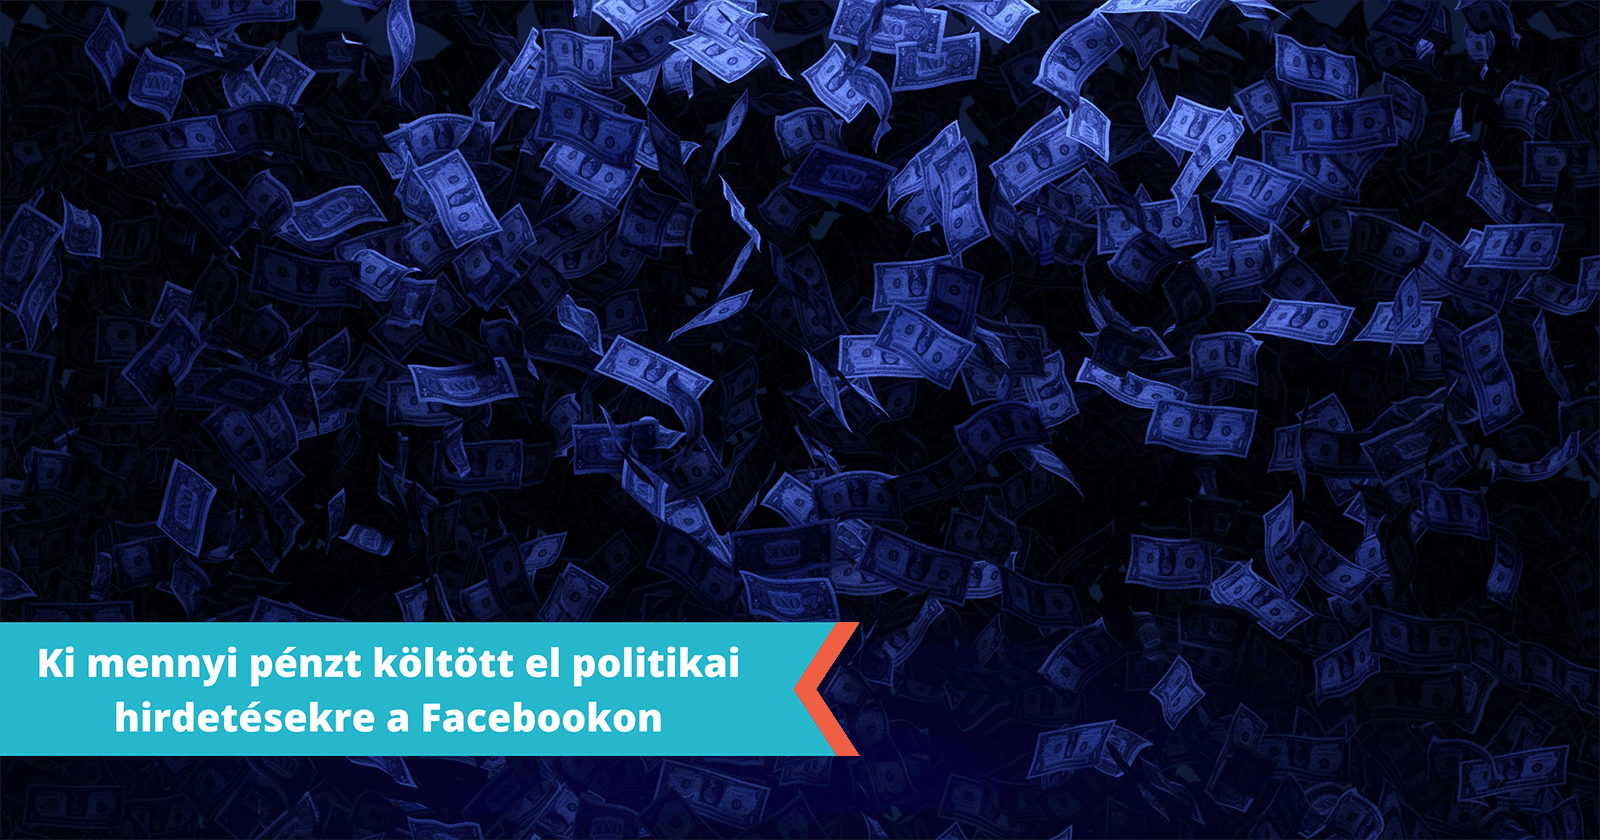 Politikai költések a Facebookon 2022: Lerántjuk a leplet arról, hogy 2022 elején ki mennyi pénzt költött el Magyarországon politikai hirdetésekre a Facebookon